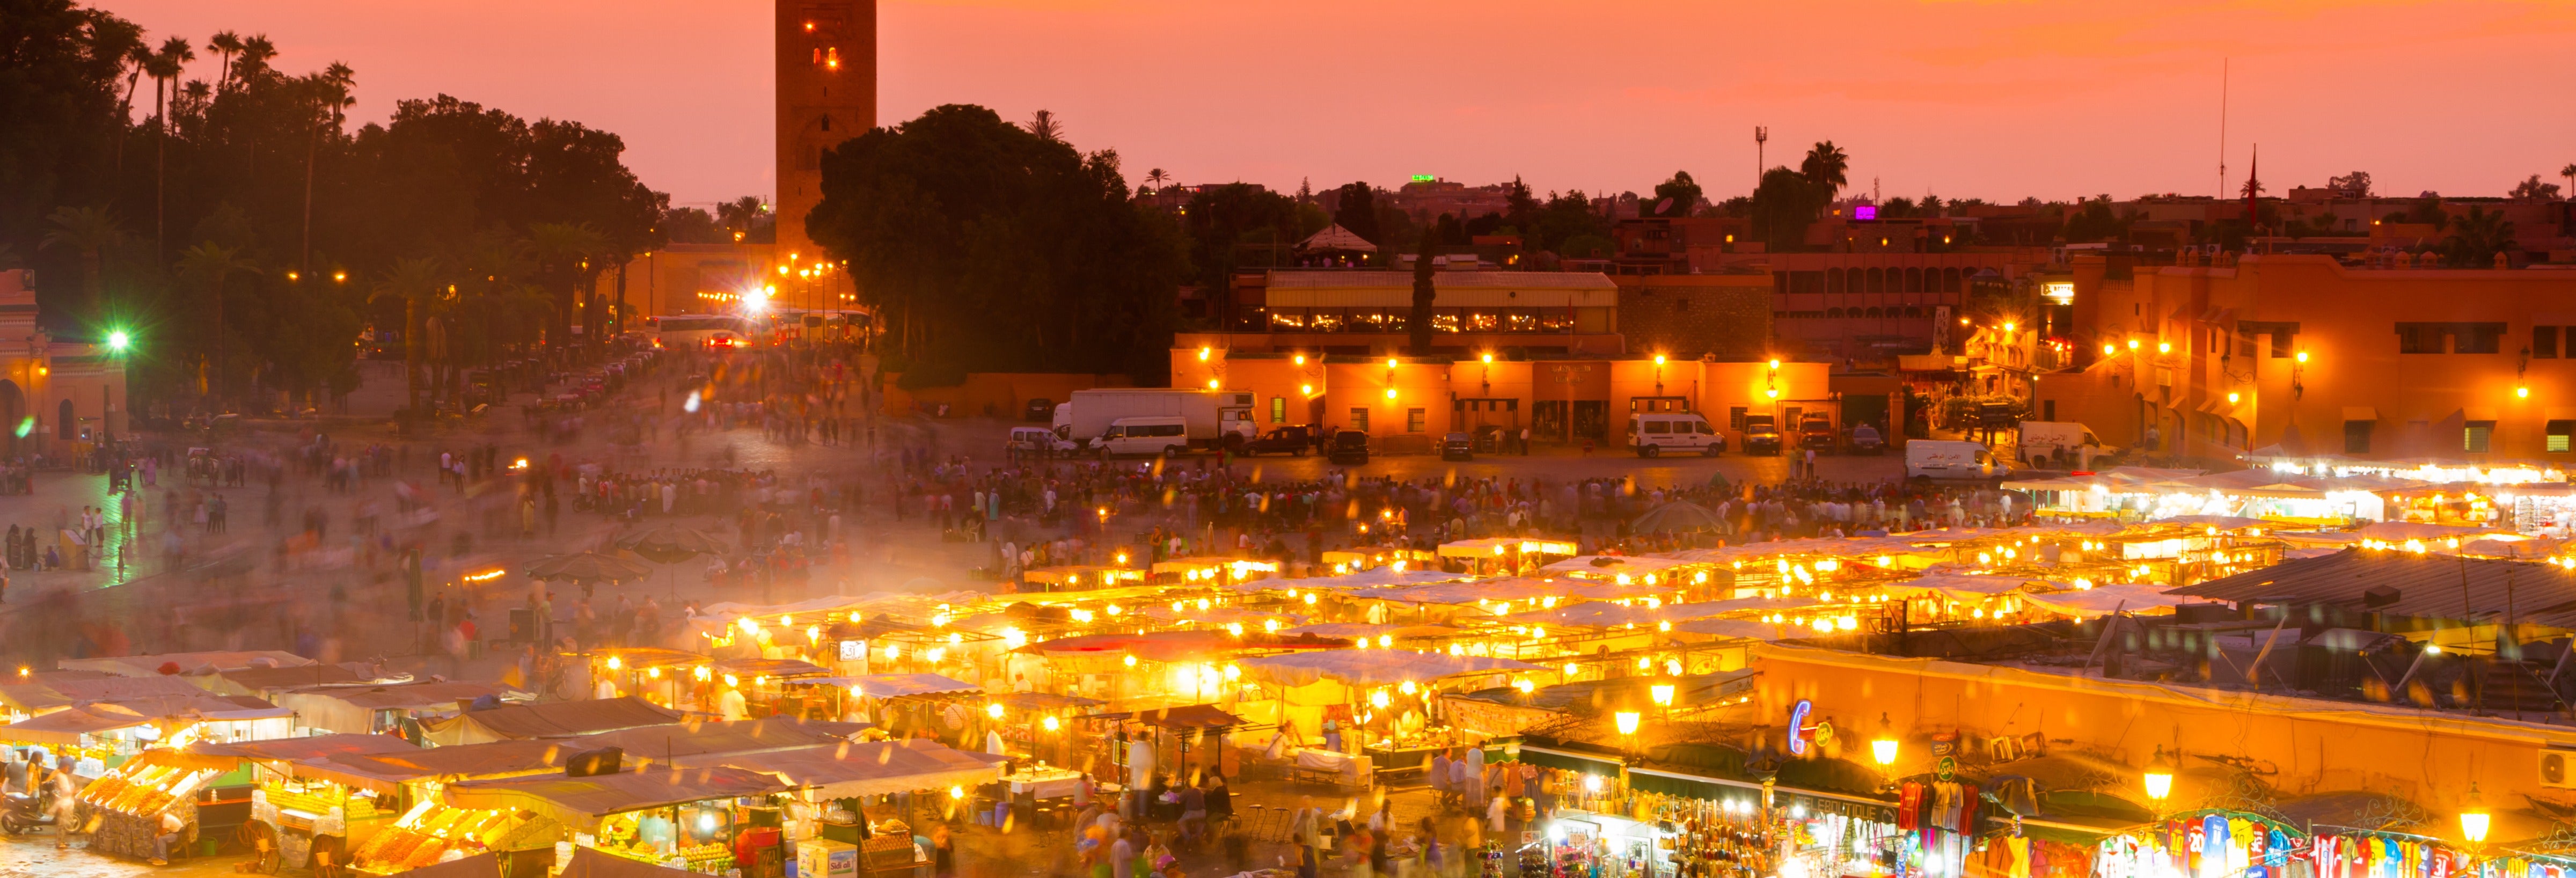 Marrakech à noite, tour de charrete